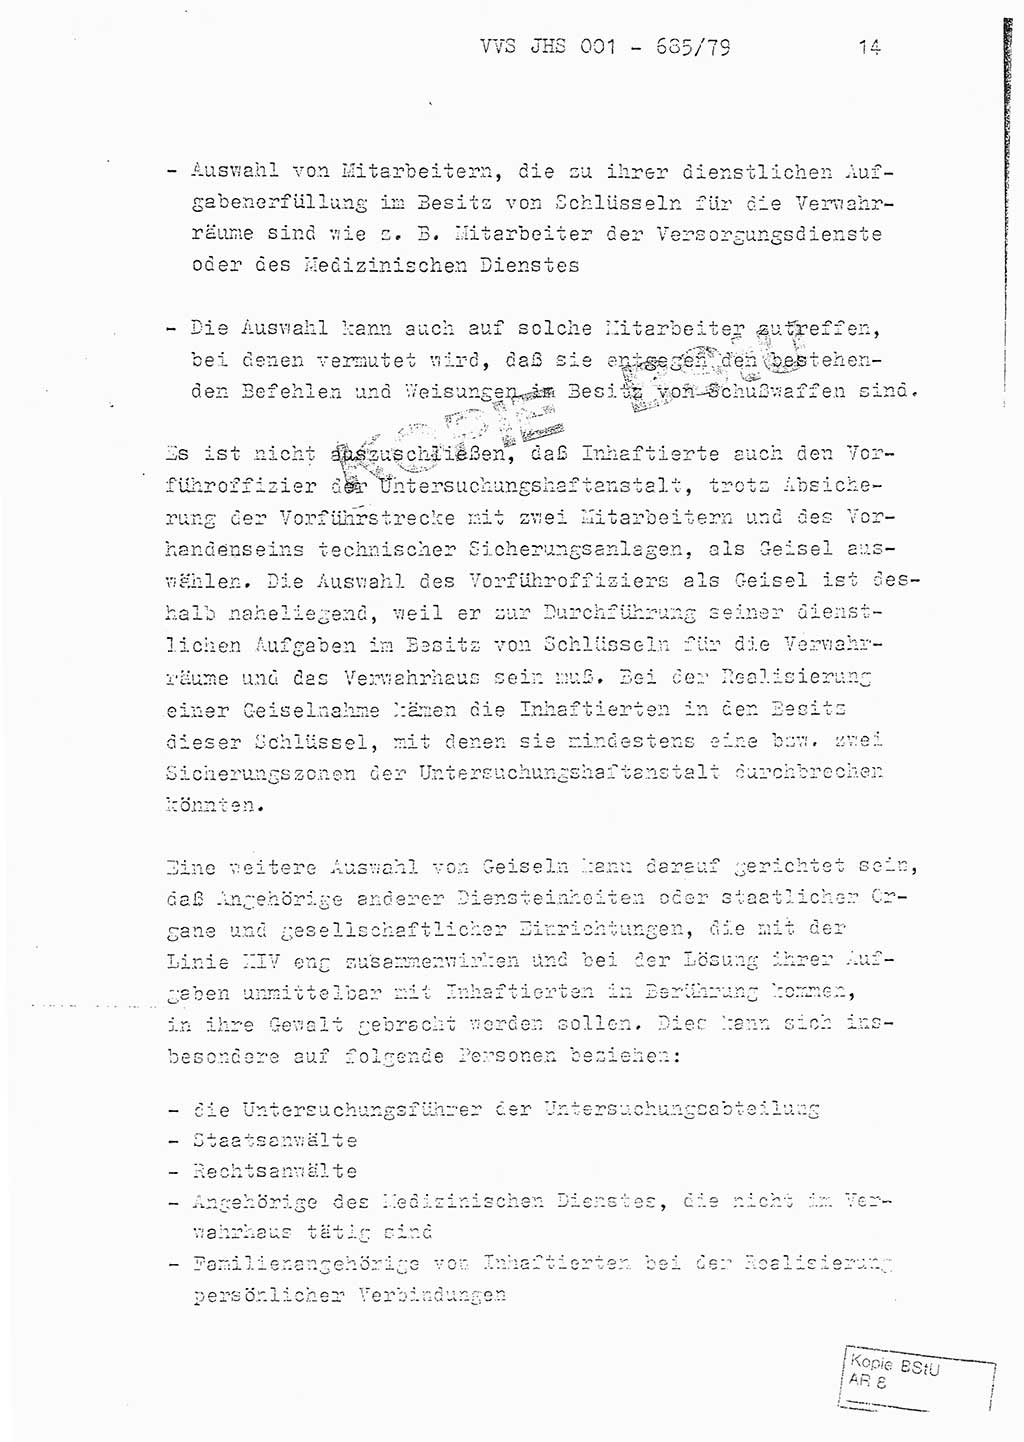 Fachschulabschlußarbeit Oberleutnant Helmut Peckruhn (BV Bln. Abt. ⅩⅣ), Ministerium für Staatssicherheit (MfS) [Deutsche Demokratische Republik (DDR)], Juristische Hochschule (JHS), Vertrauliche Verschlußsache (VVS) 001-685/79, Potsdam 1979, Seite 14 (FS-Abschl.-Arb. MfS DDR JHS VVS 001-685/79 1979, S. 14)